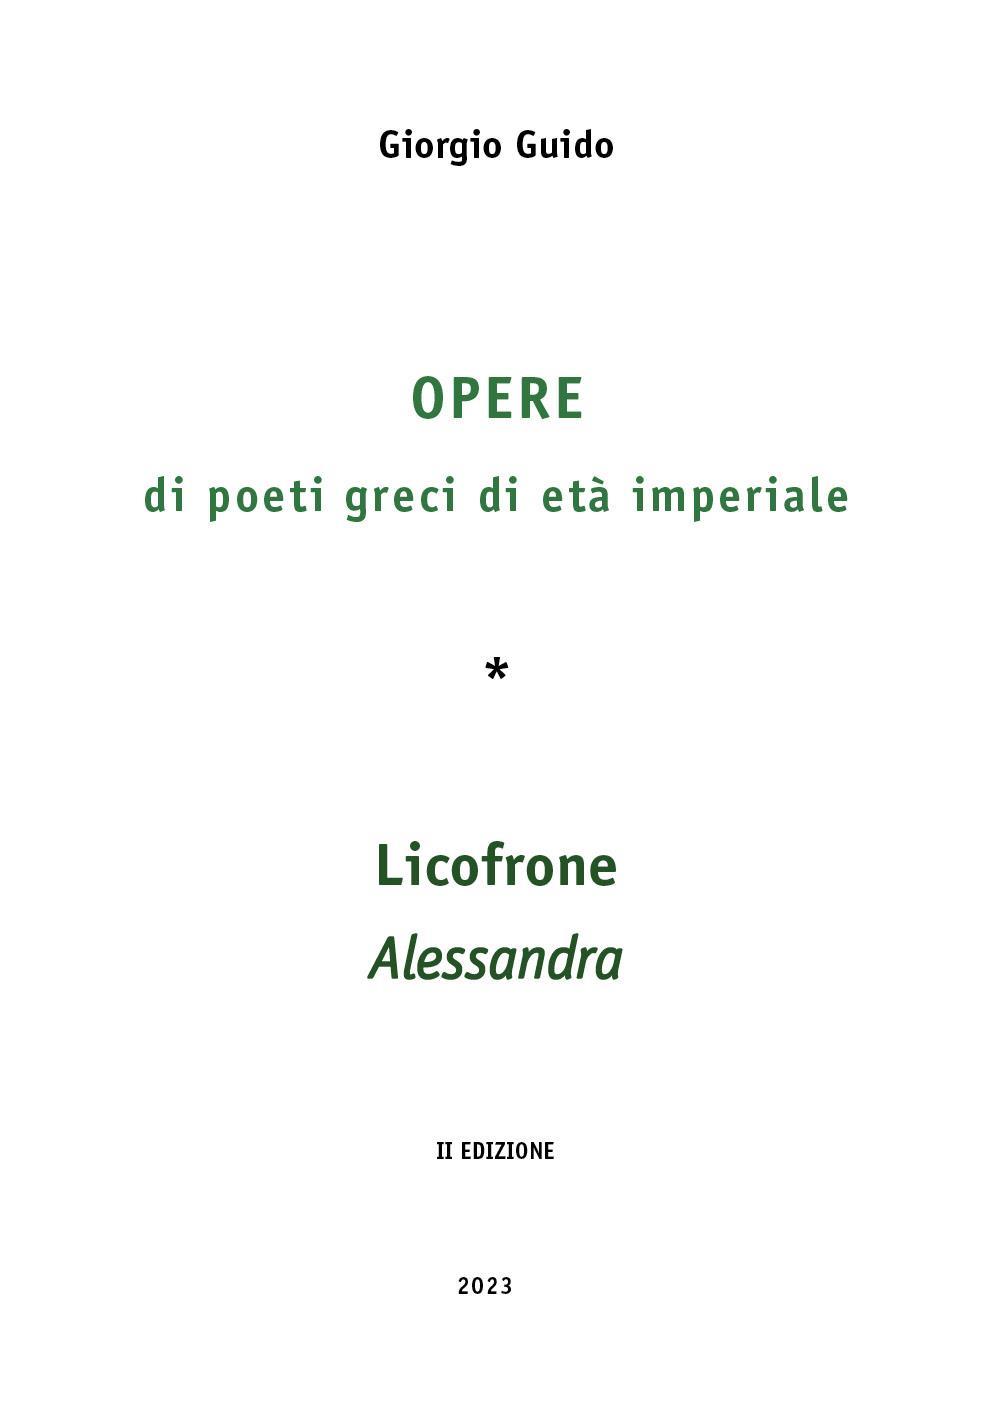 Opere di poeti greci di età imperiale  -  Licofrone  - Alessandra